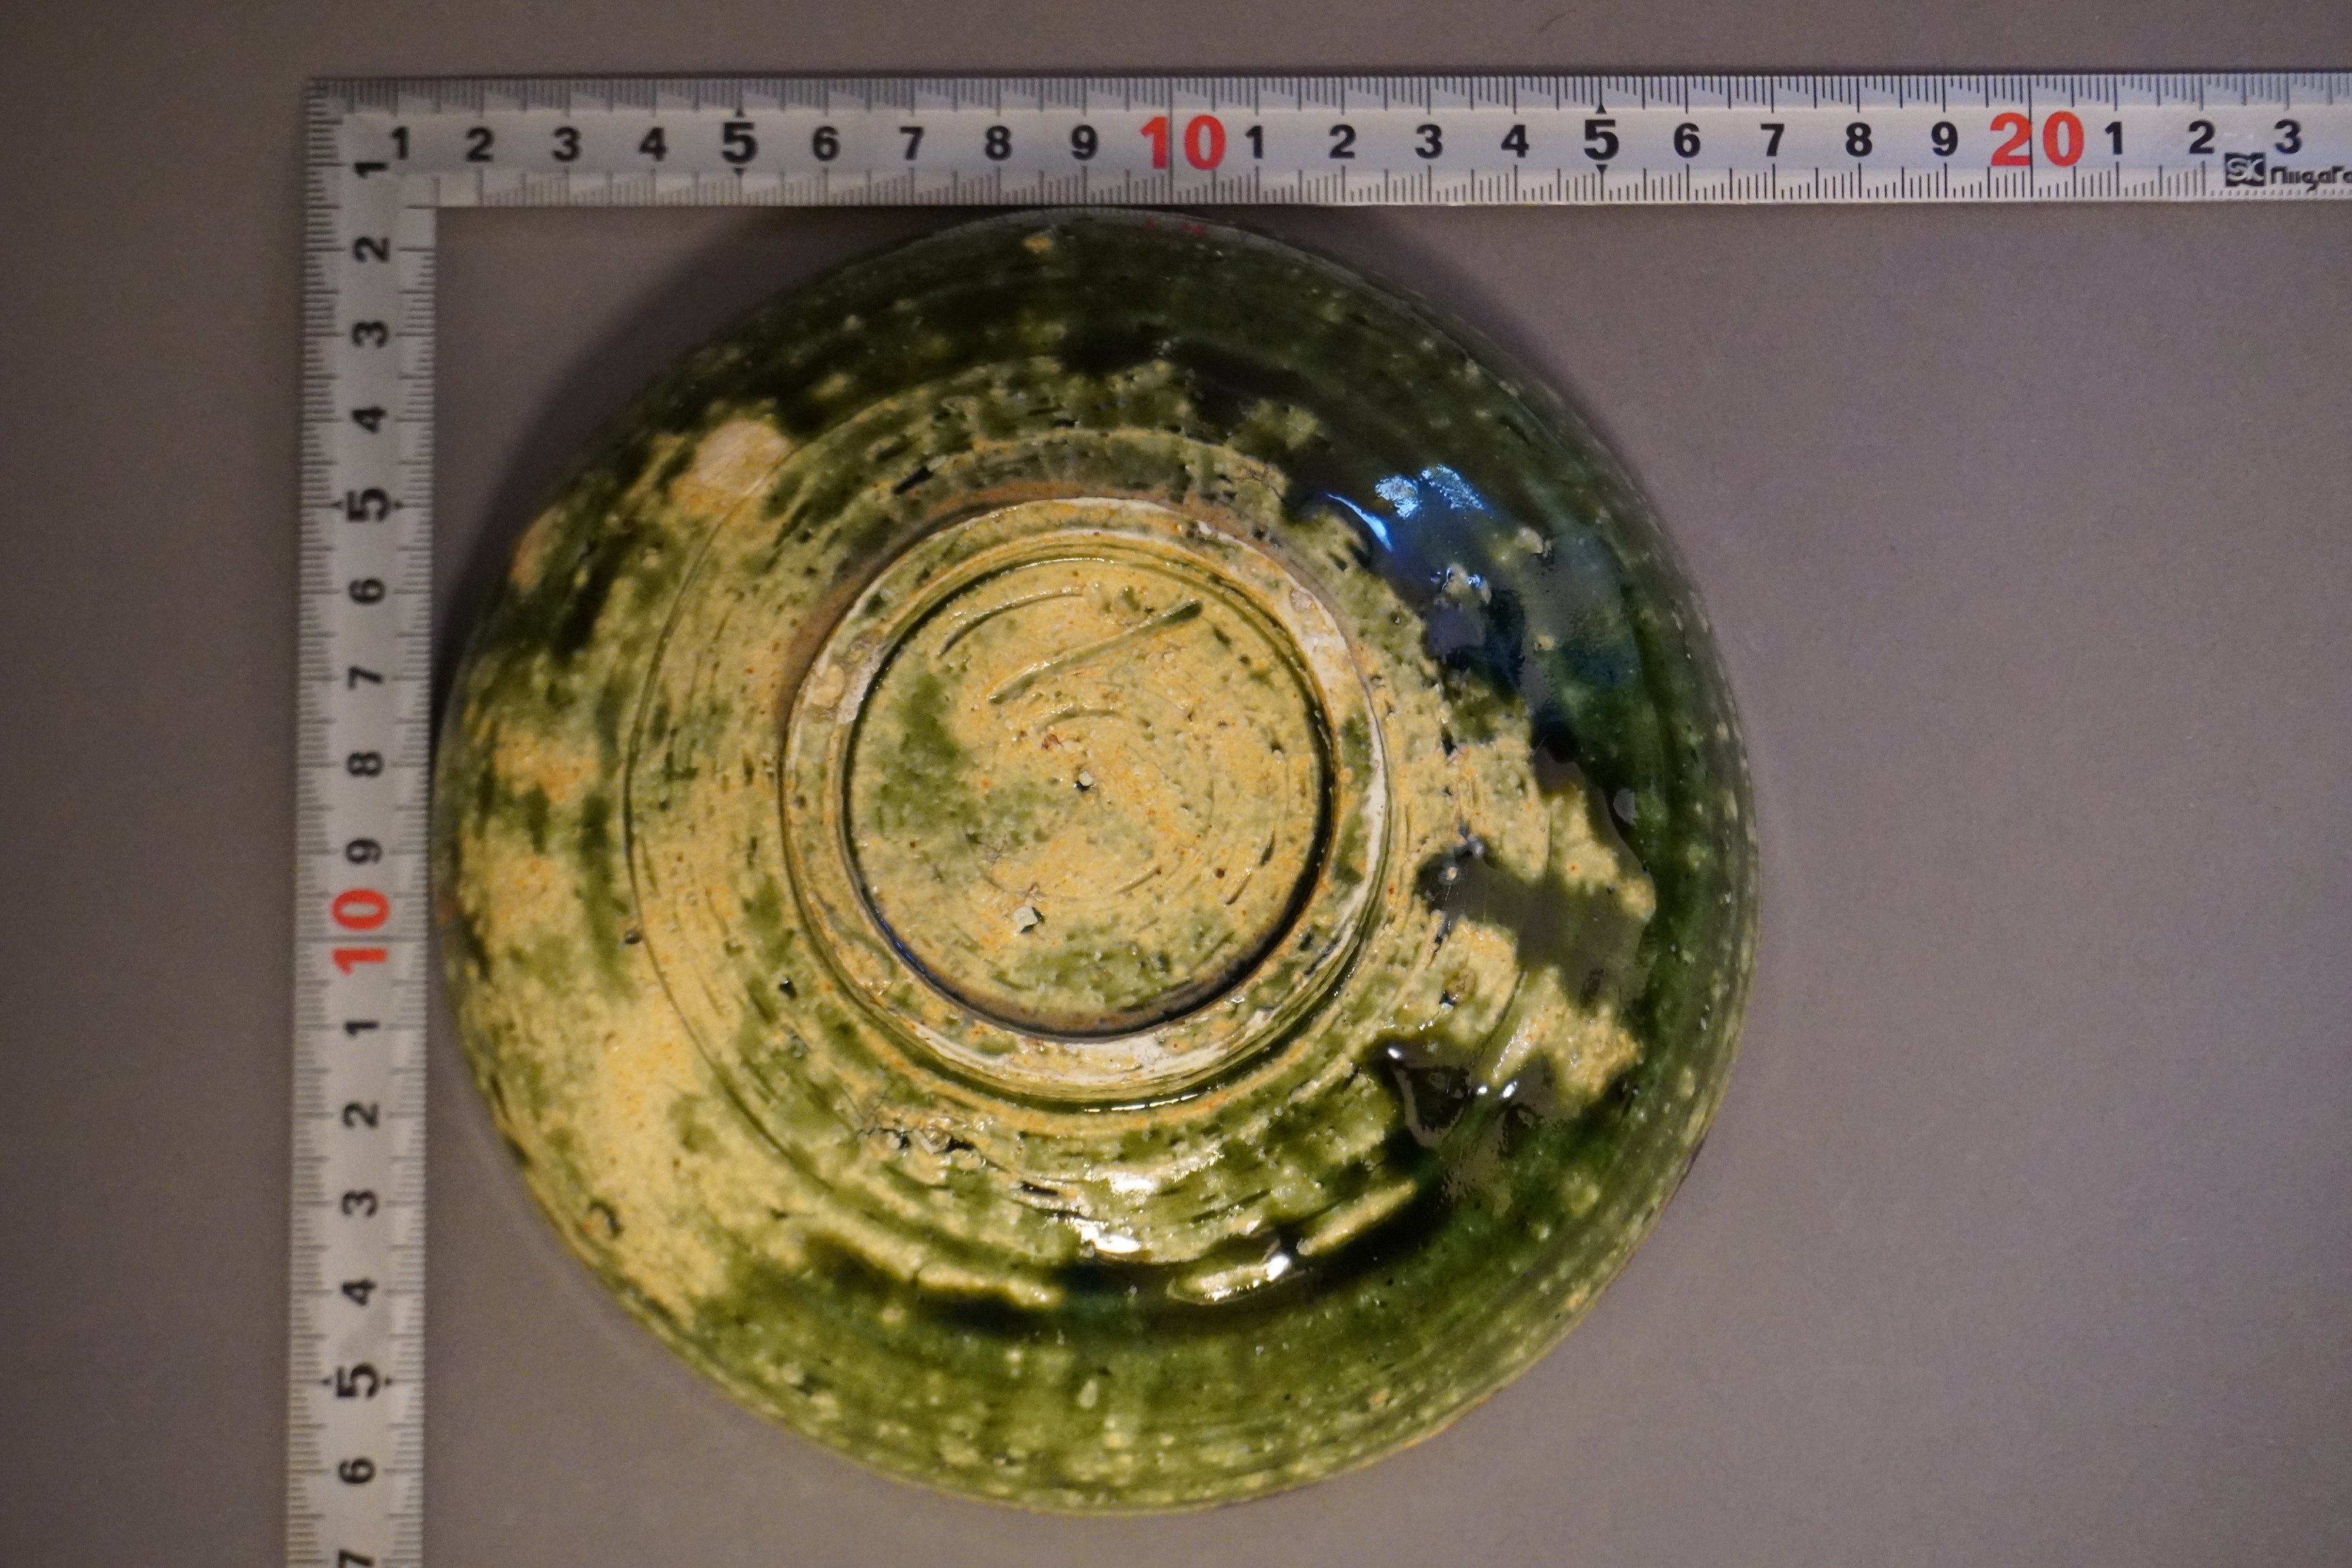 Manabu Yoshida 5 inch bowl